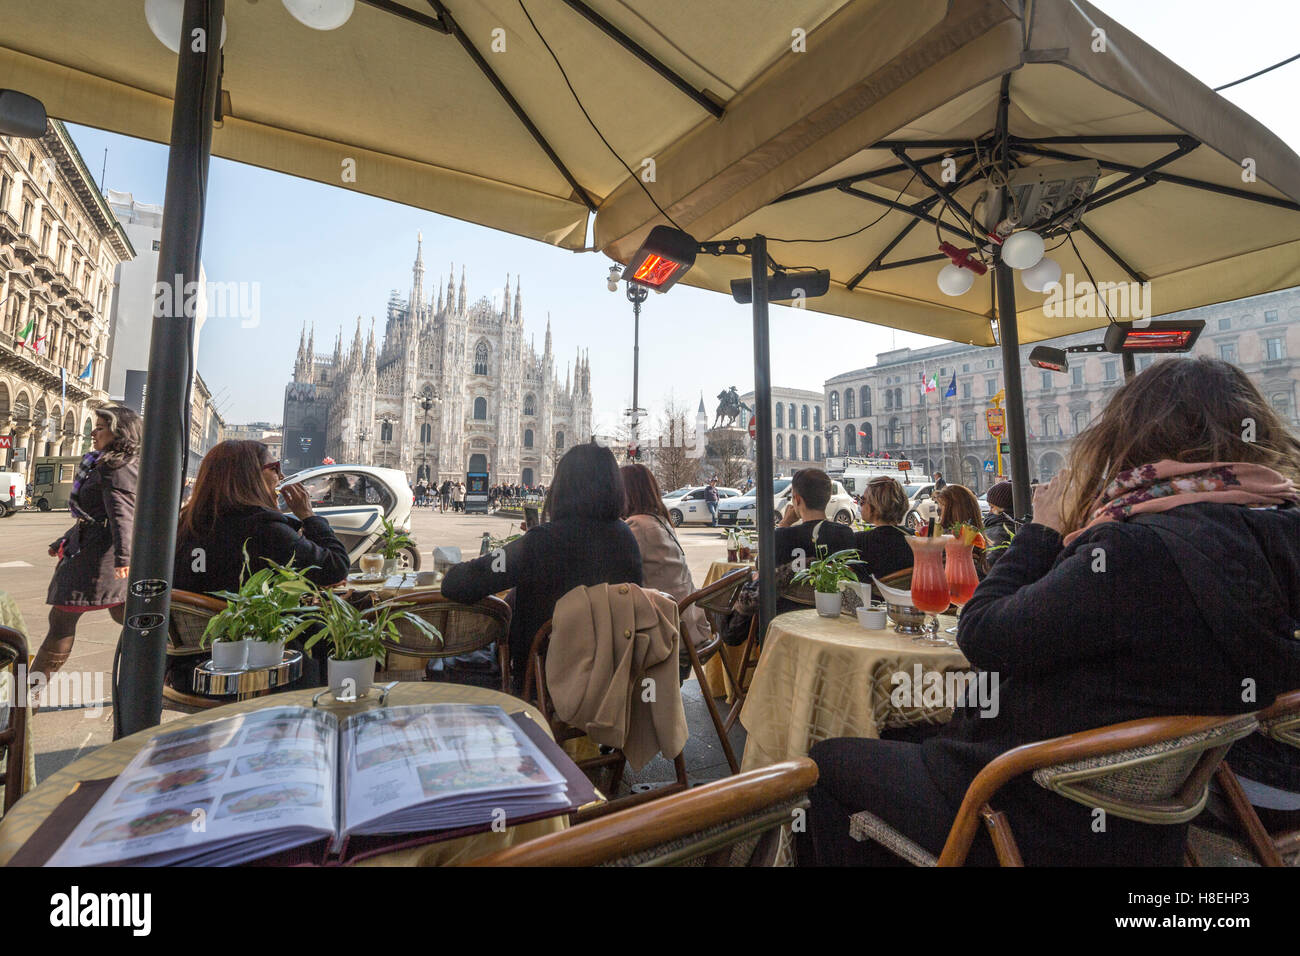 Los turistas en el cafe contemplar la Catedral y su plaza, Milán, Lombardía, Italia, Europa Foto de stock